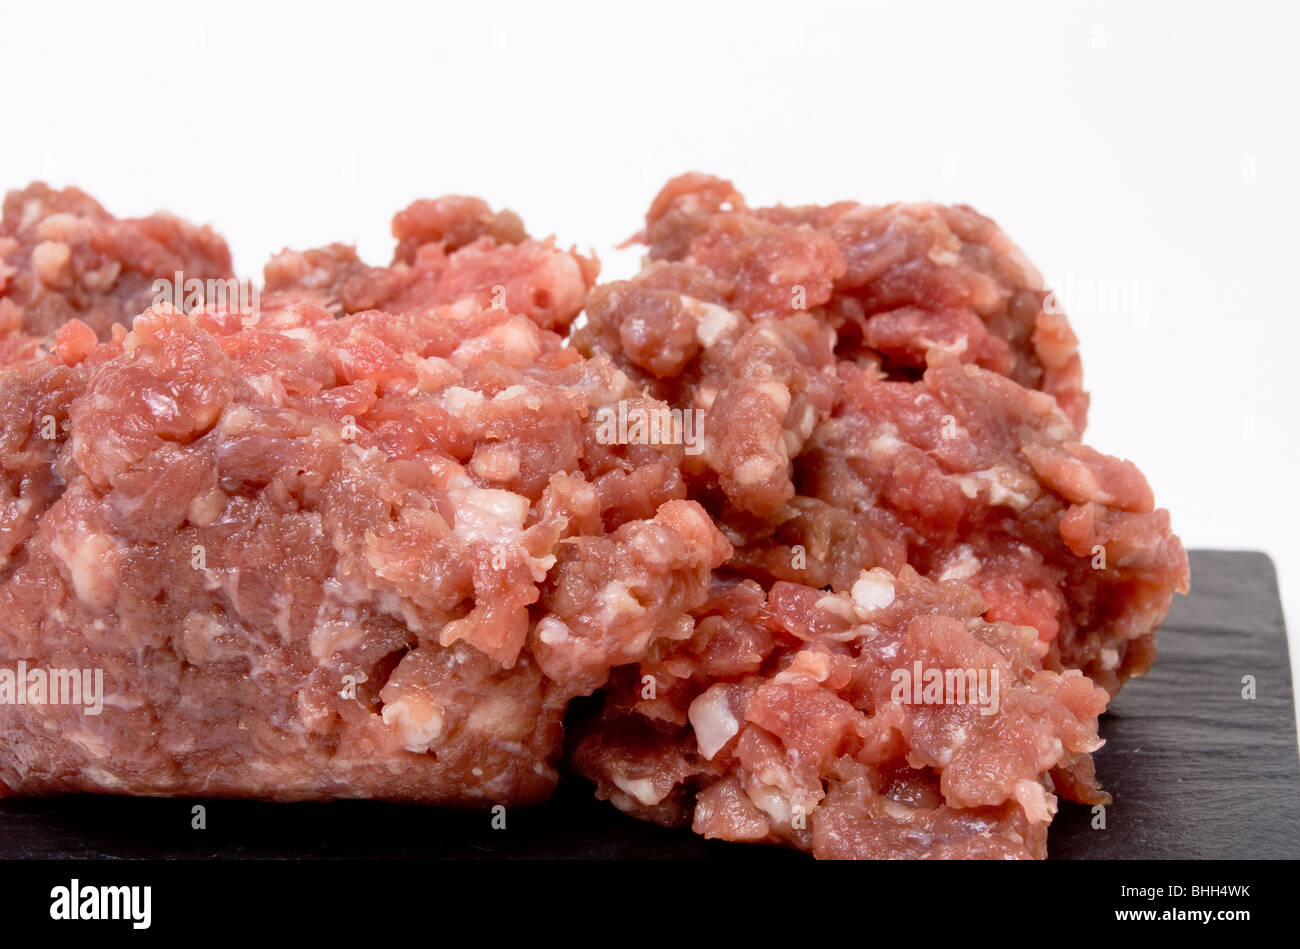 La masse ou de la viande hachée de près de vue faible contre l'arrière-plan blanc. Banque D'Images